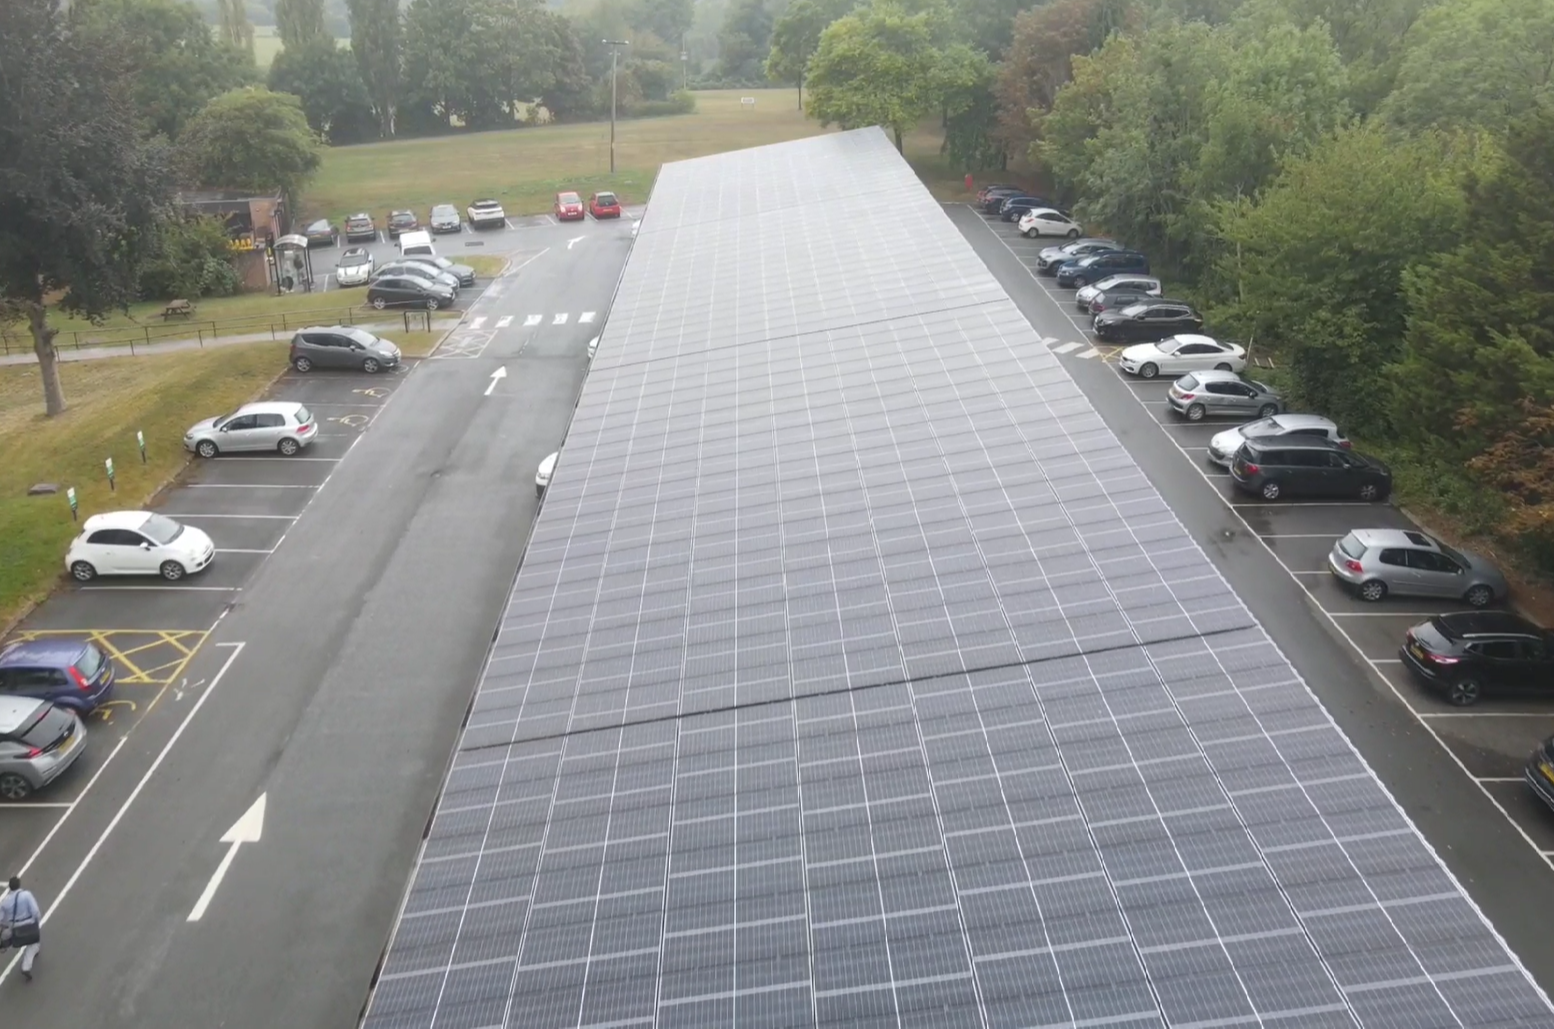 Tewkesbury Solar Carport